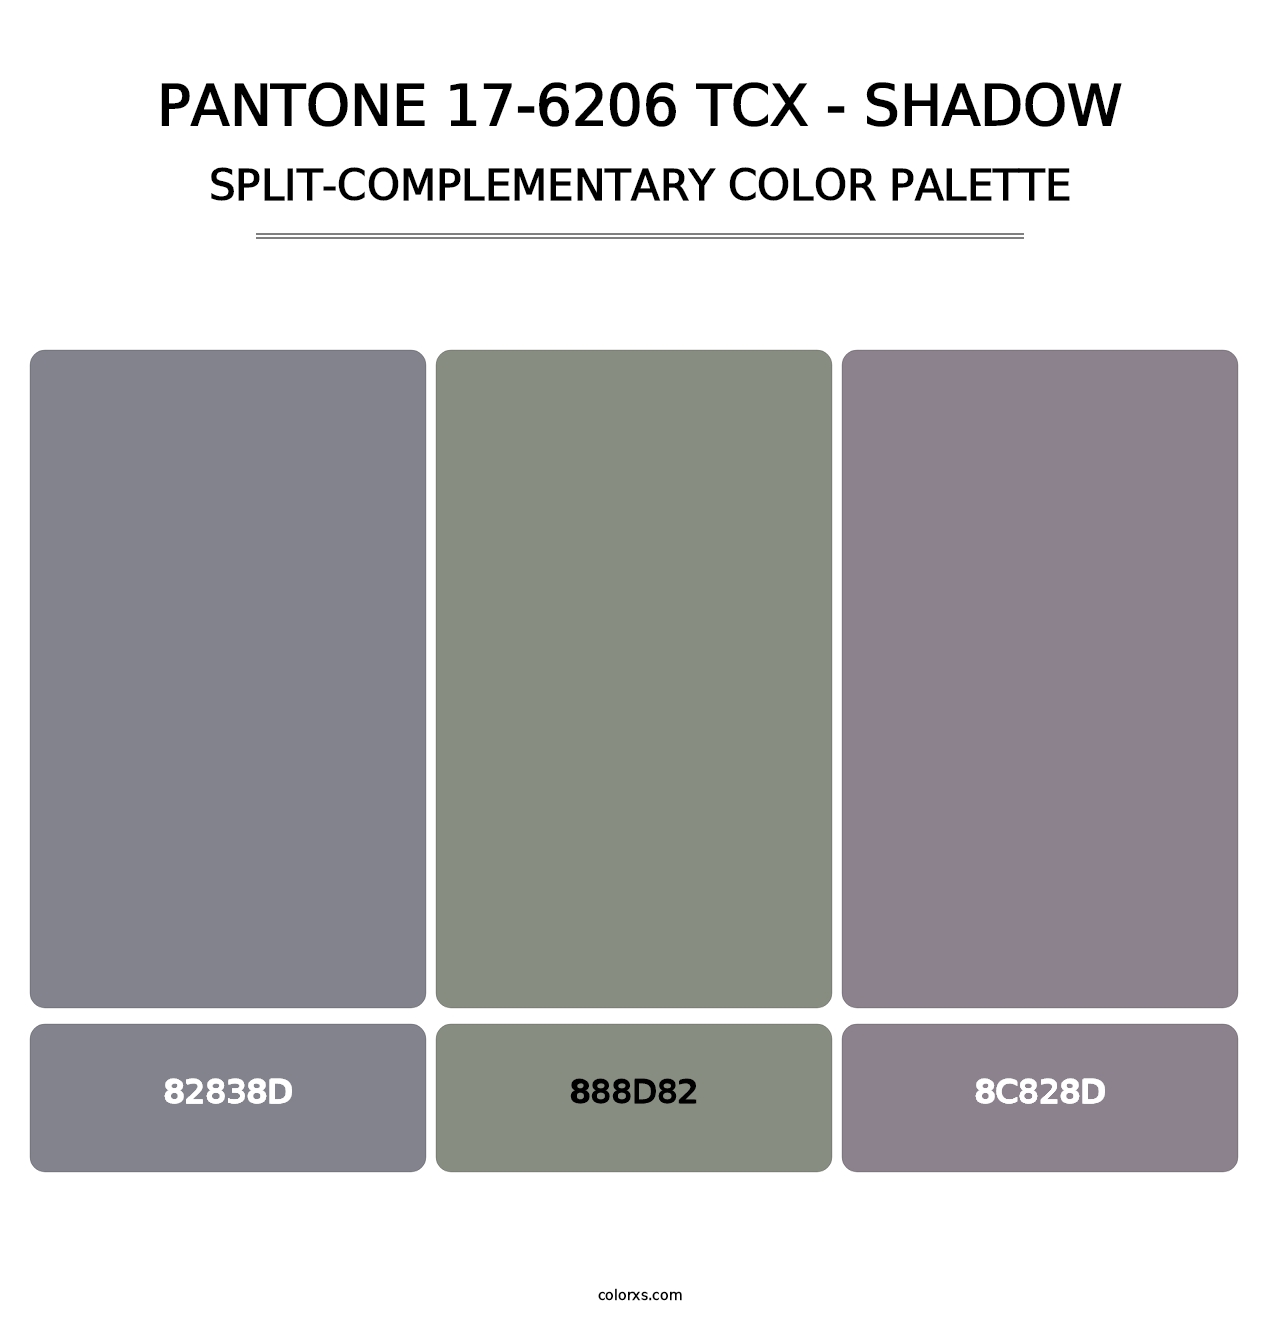 PANTONE 17-6206 TCX - Shadow - Split-Complementary Color Palette